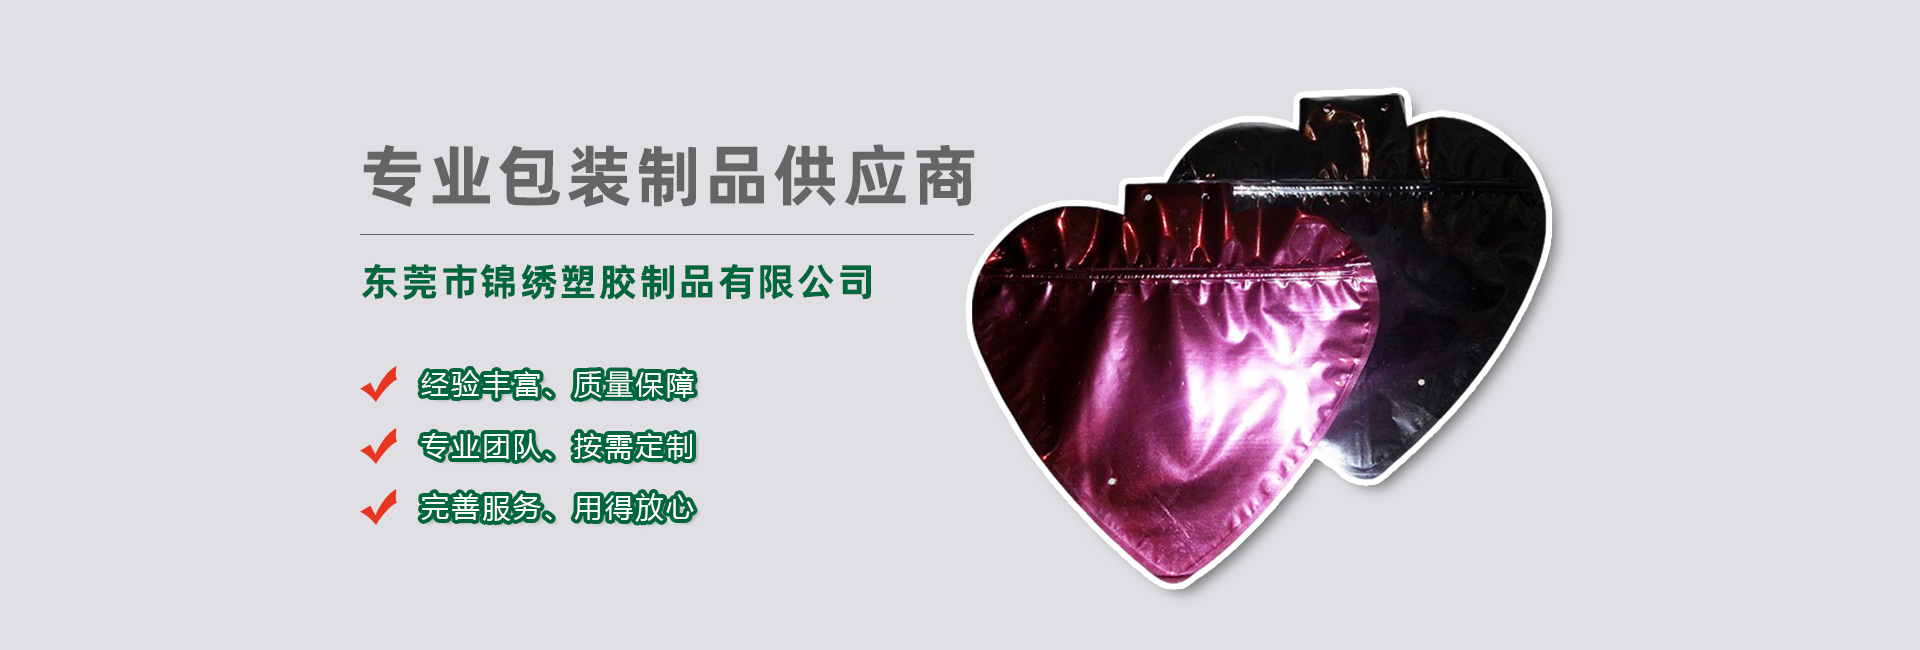 锦州食品袋banner